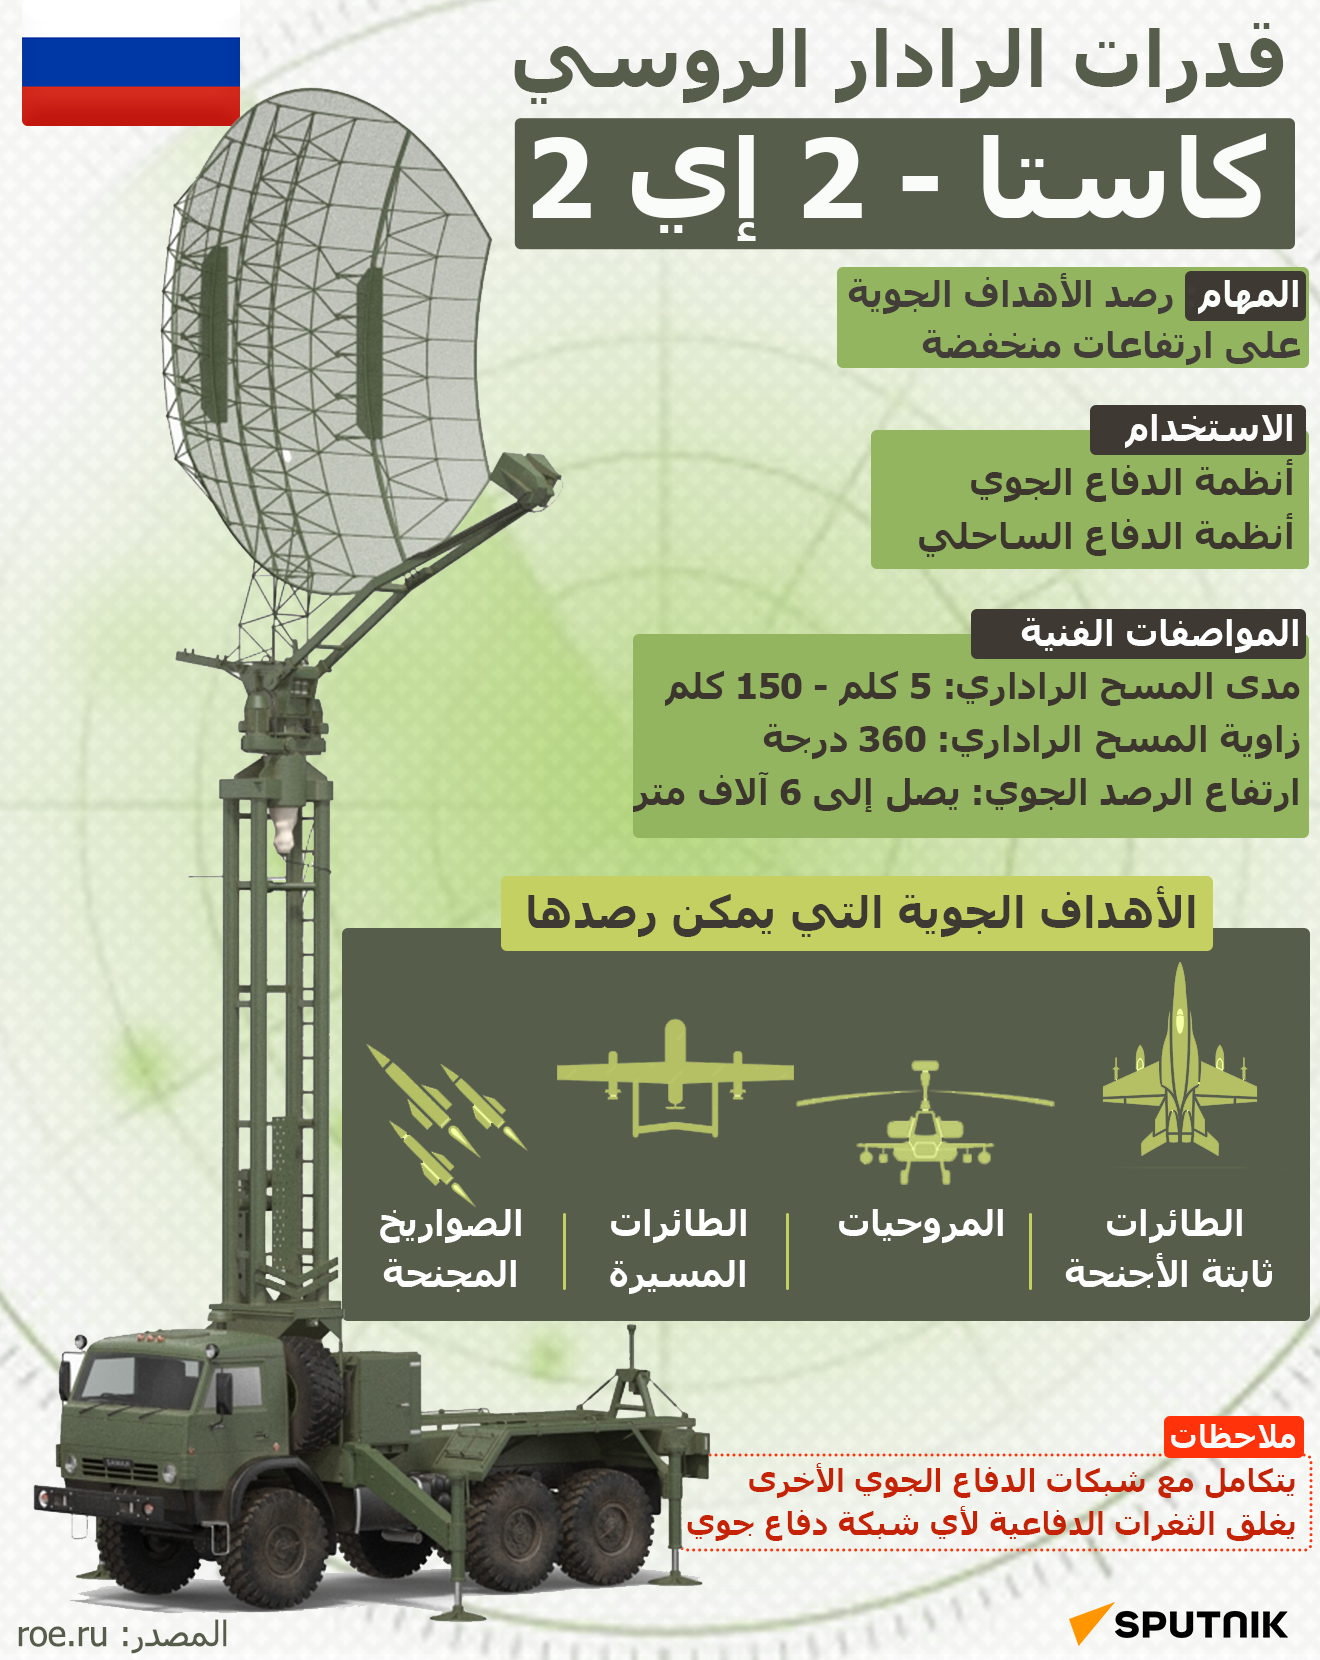 قدرات الرادار الروسي كاستا - 2 إي 2 - سبوتنيك عربي